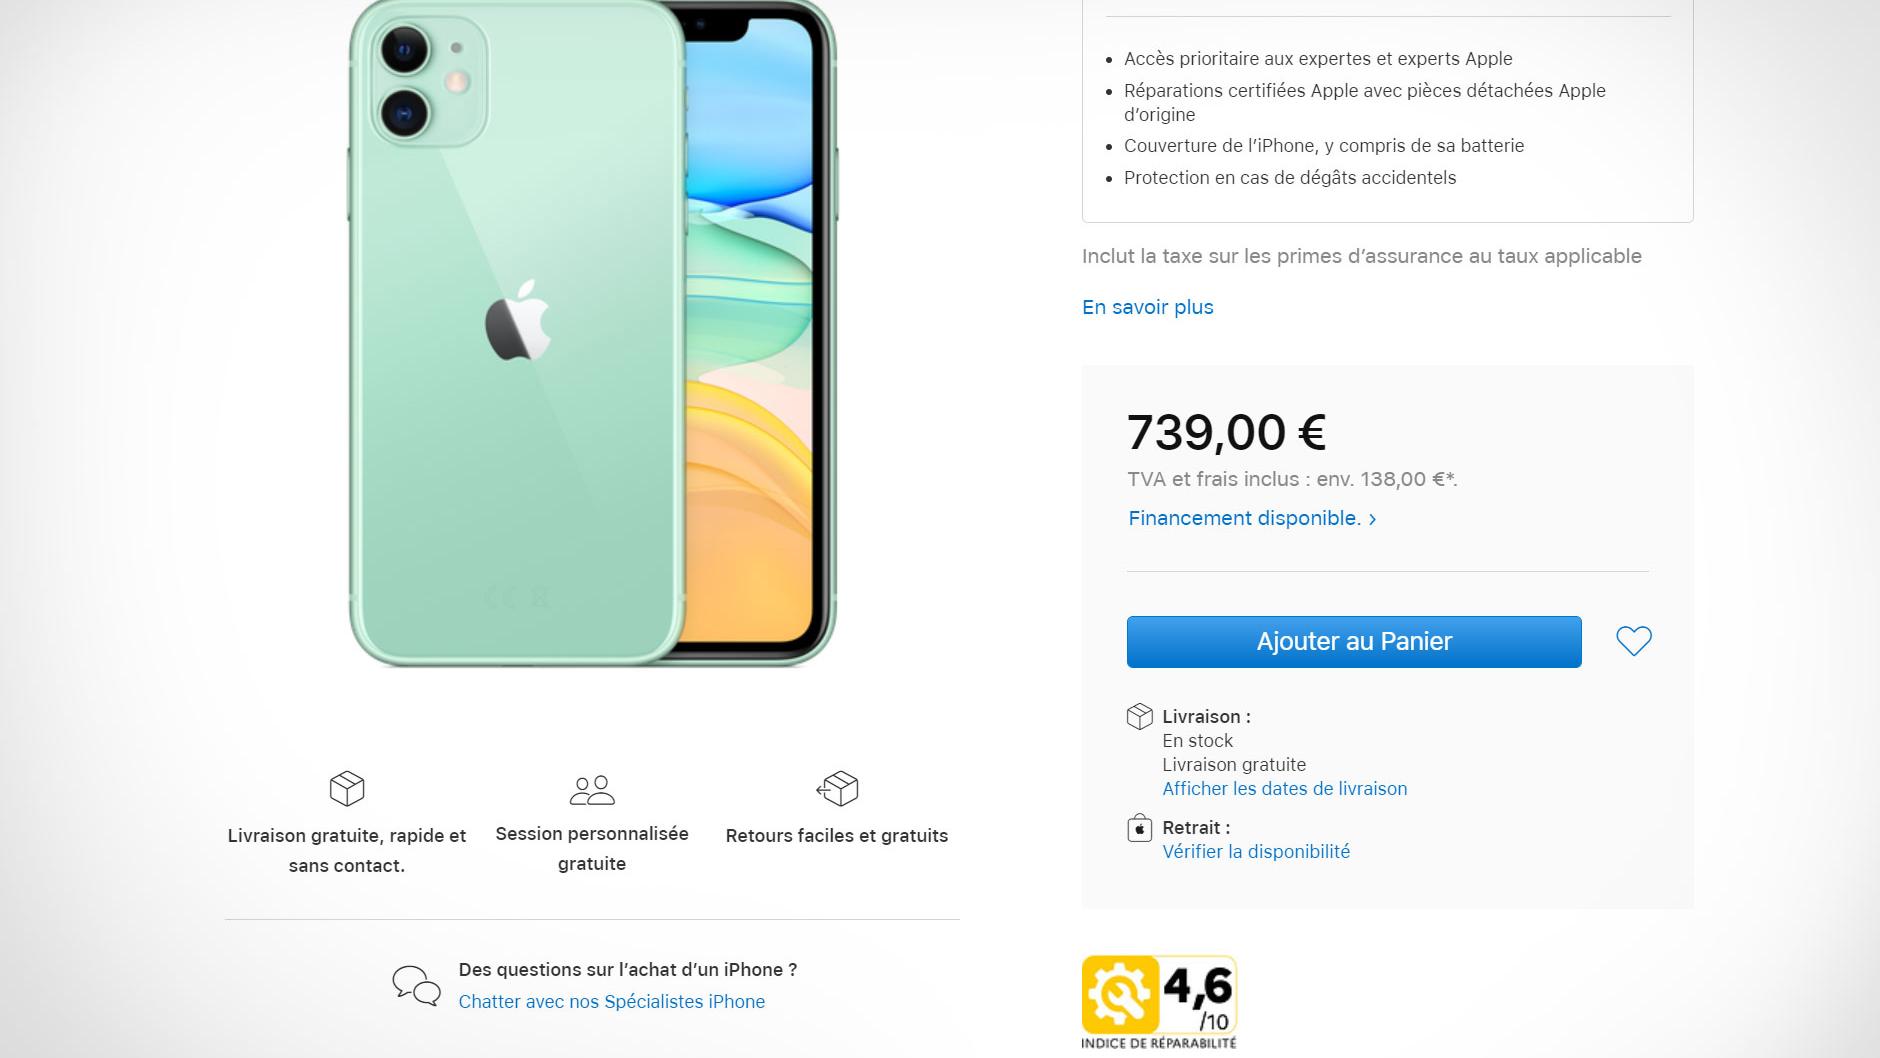 Slik tvinges Apple til å markedsføre iPhone i Frankrike